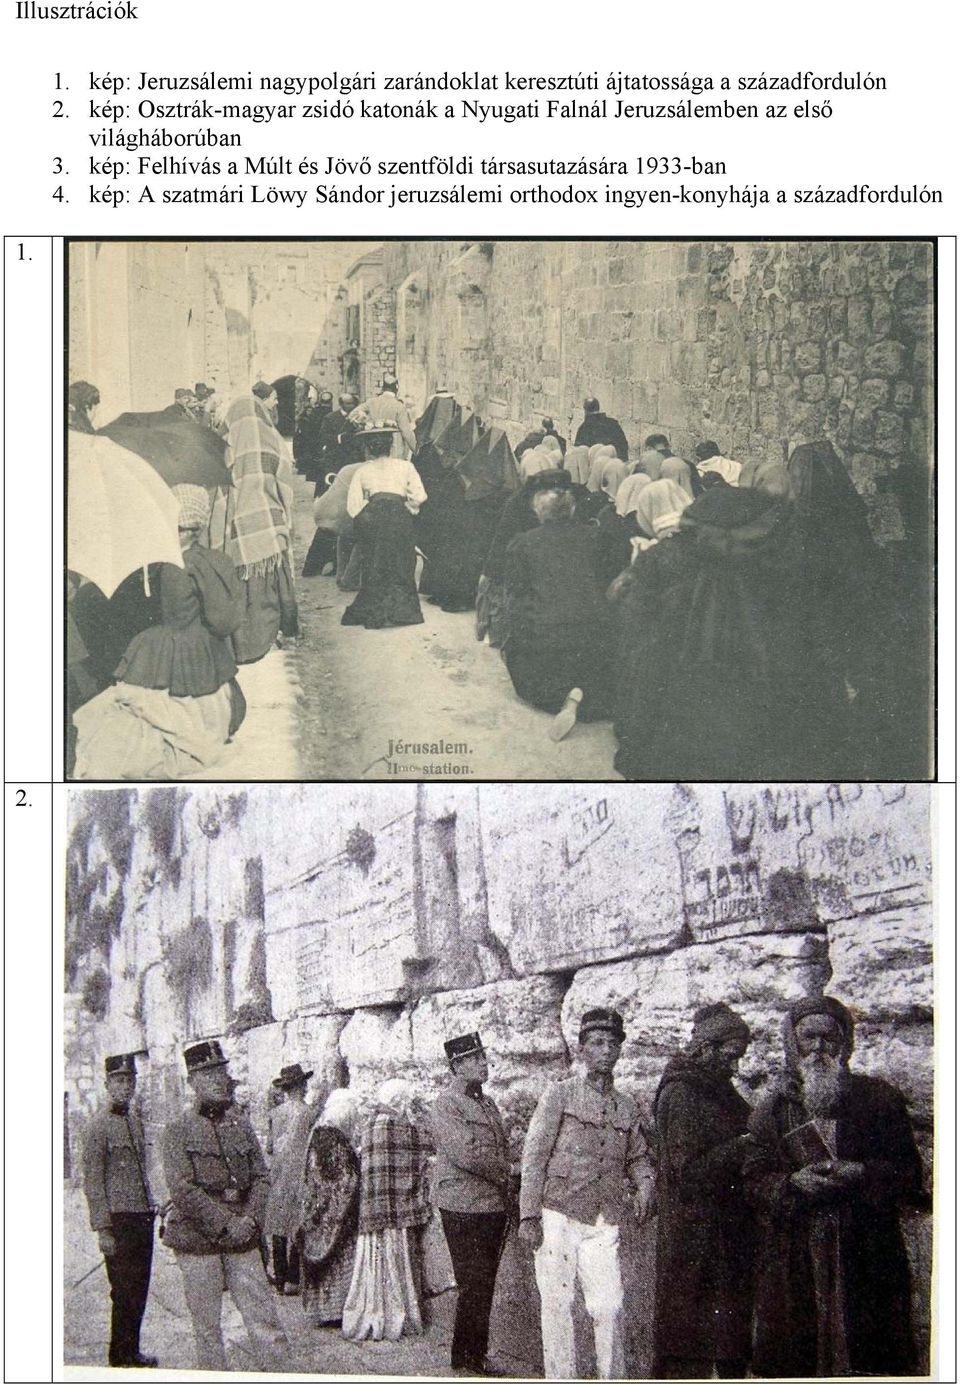 kép: Osztrák-magyar zsidó katonák a Nyugati Falnál Jeruzsálemben az első